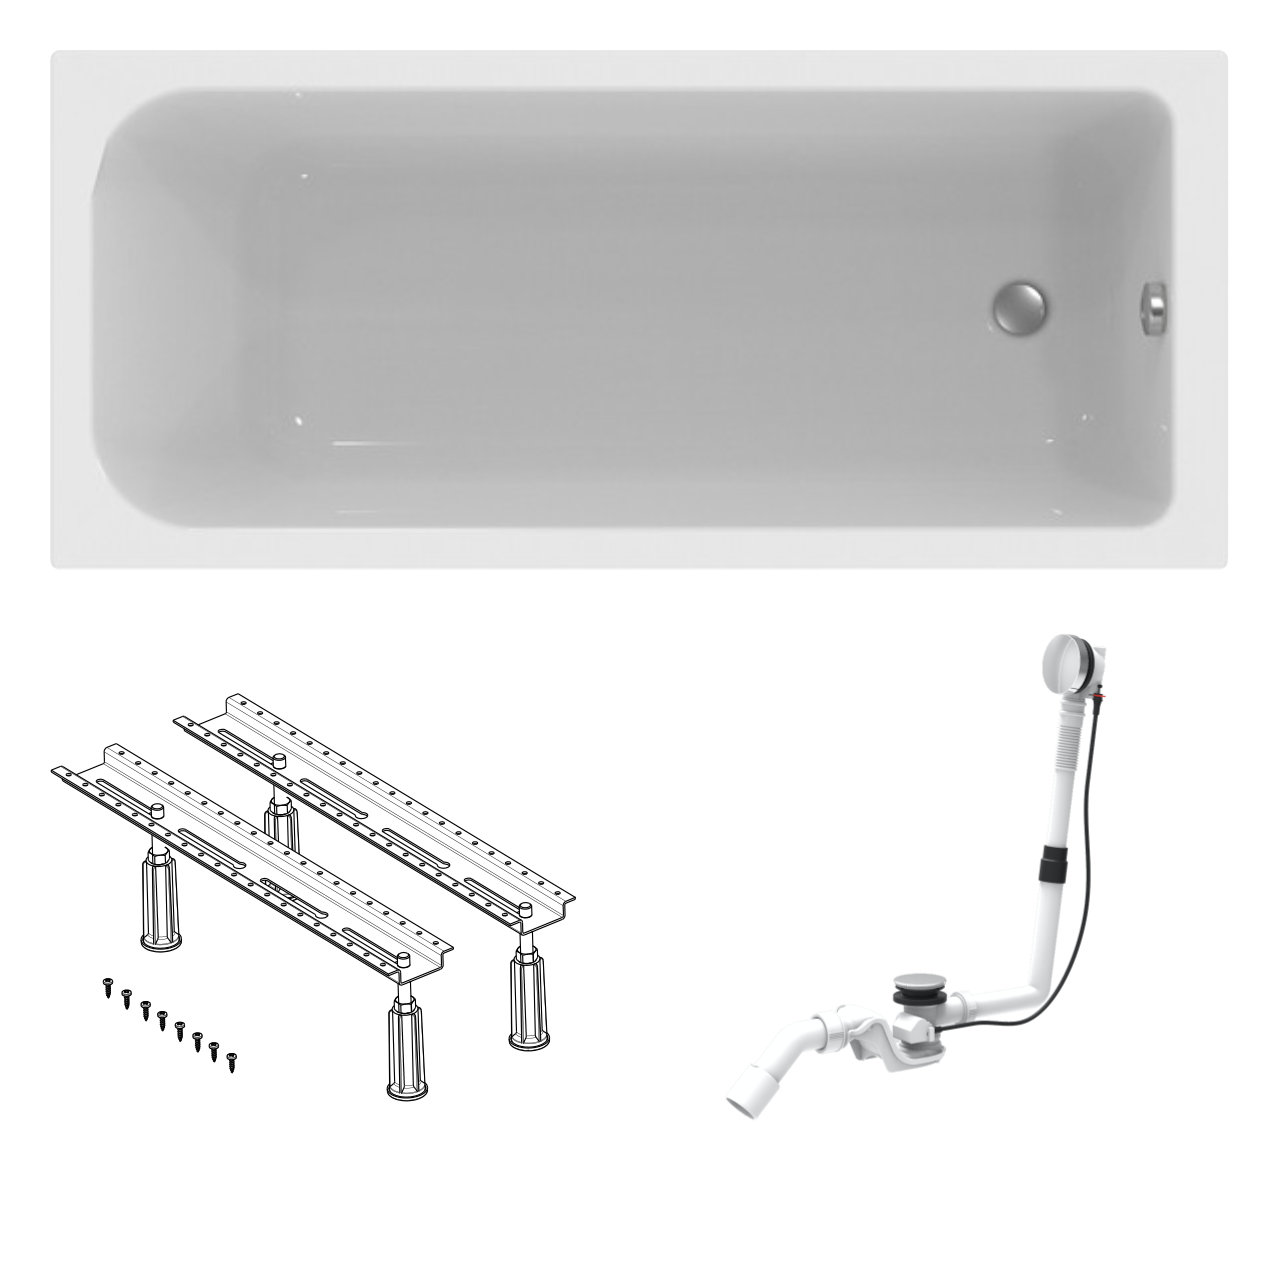 Acryl-Badewanne made by Ideal Standard 170 x 75 cm mit Füßen und Ablaufgarnitur